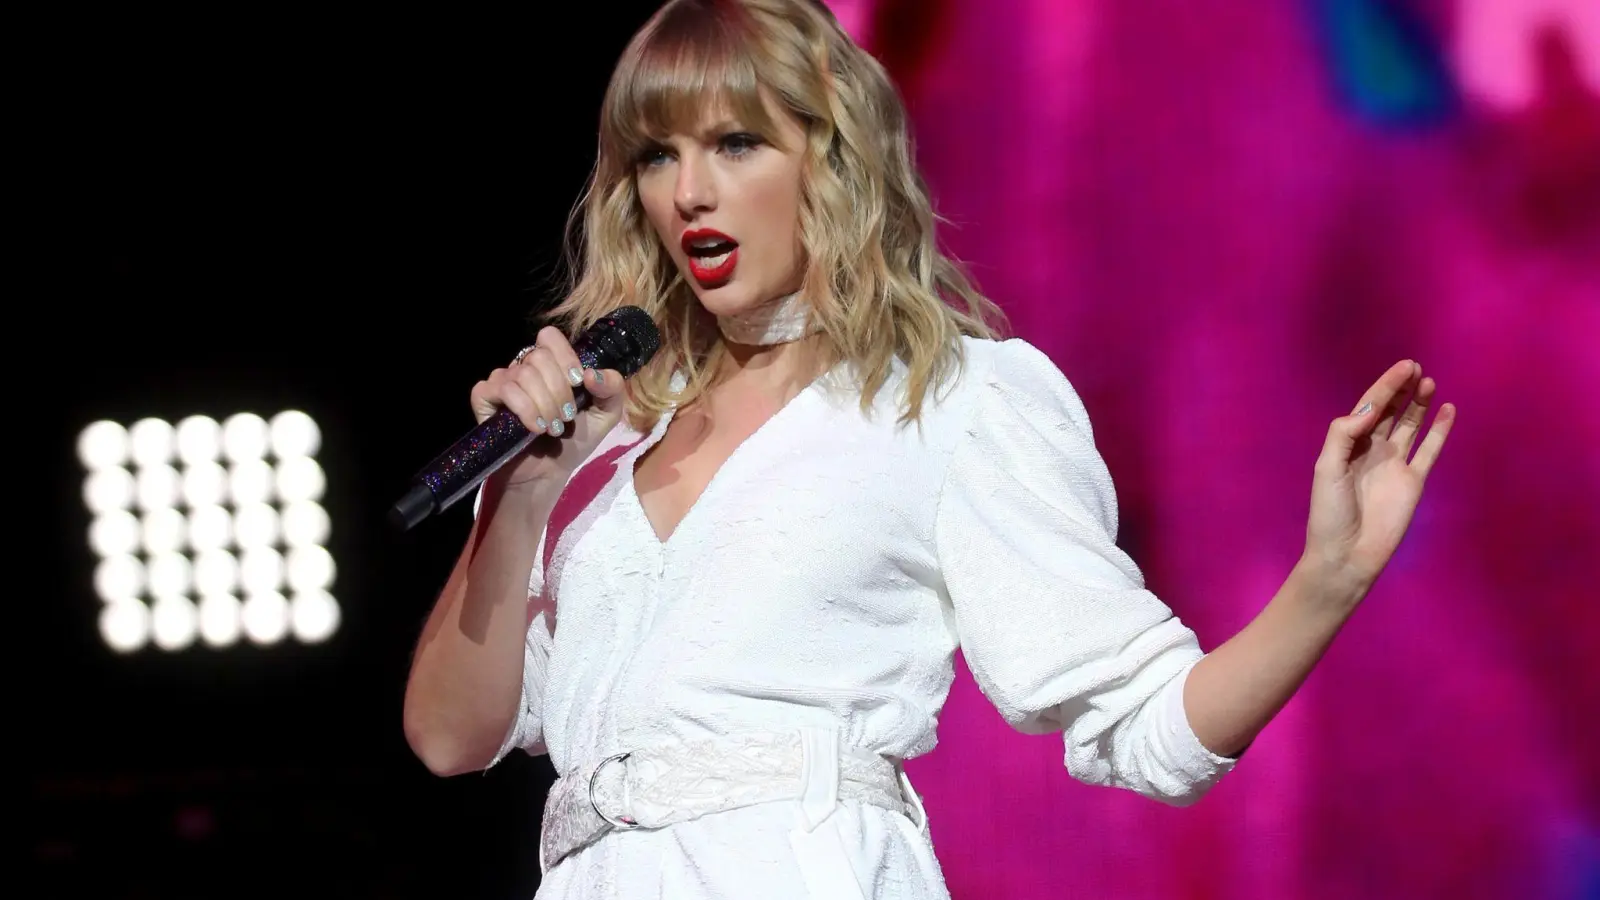 Den Konzertfilm von US-Sängerin Taylor Swift gibt es bald als Streaming-Version. (Foto: Isabel Infantes/PA Wire/dpa)